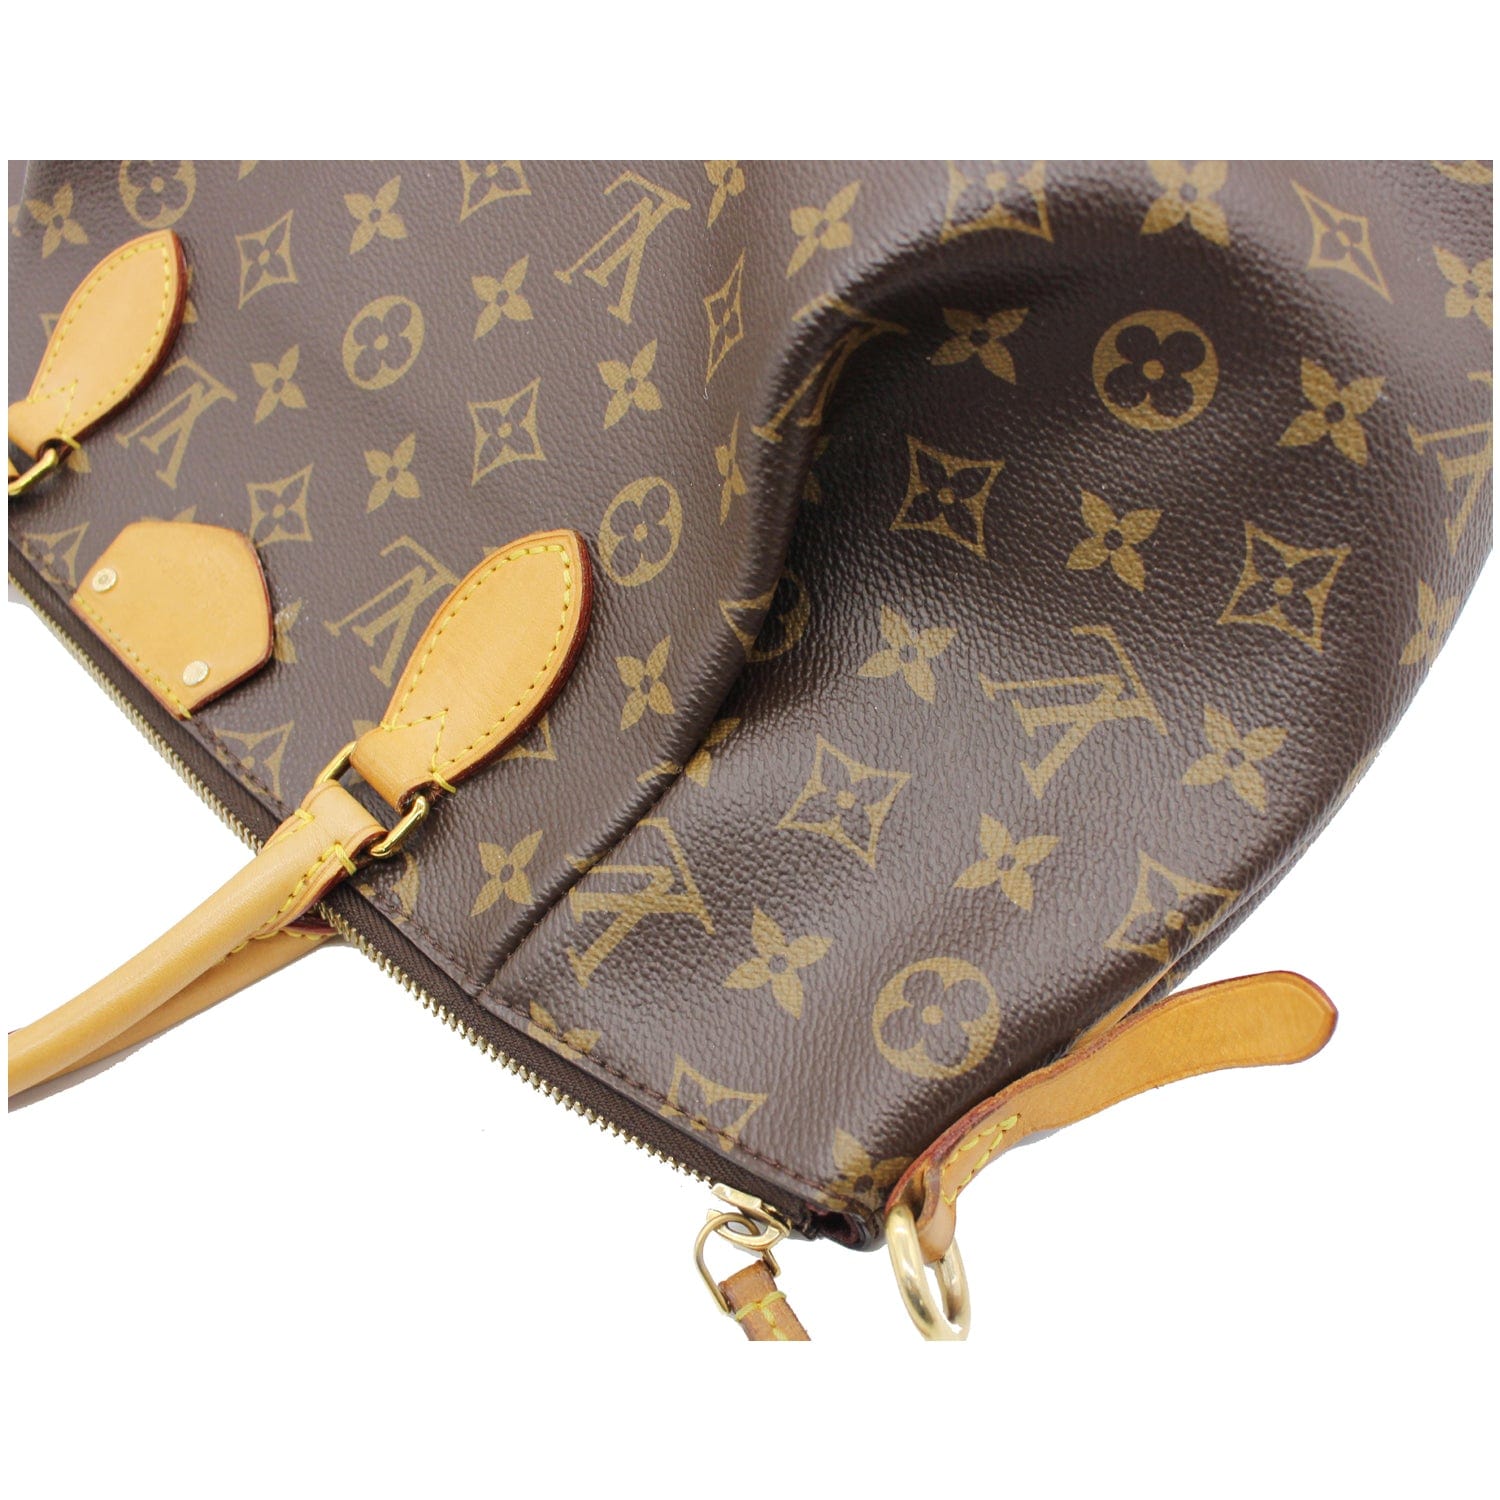 Authentic Louis Vuitton Turenne MM Monogram Canvas Shoulder Bag